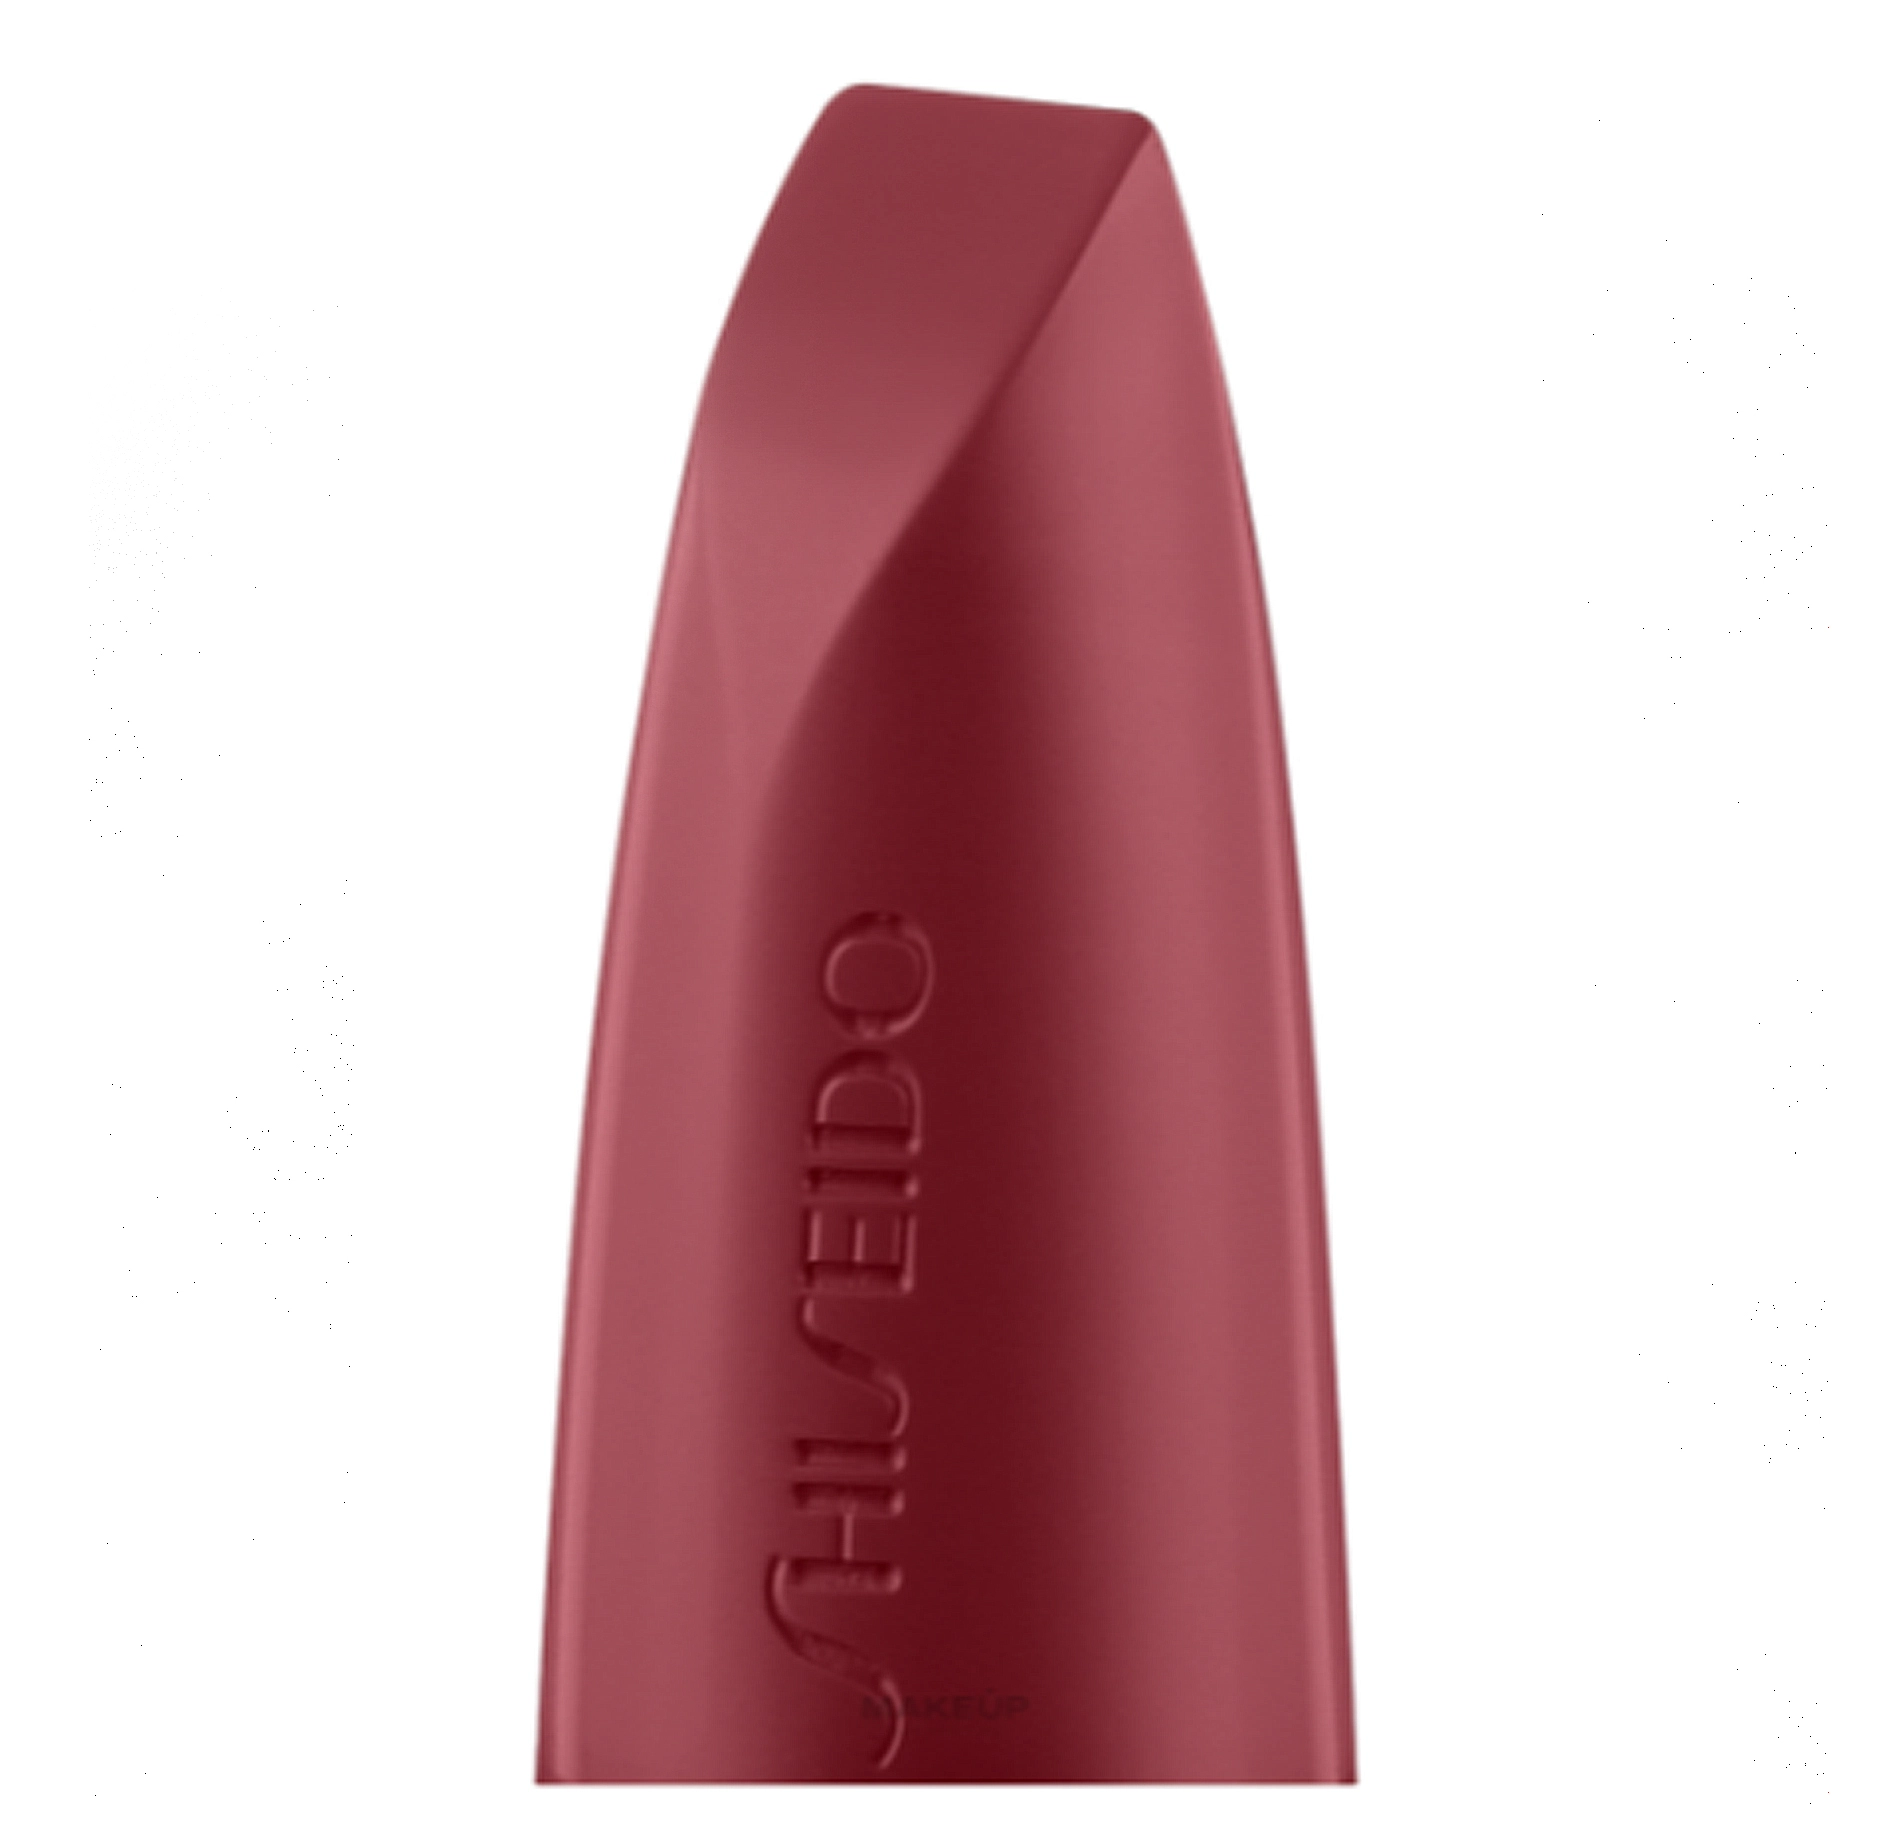 Гелева помада із сатиновим фінішем - Shiseido Technosatin Gel Lipstick, 409 - Harmonic Drive - фото N1